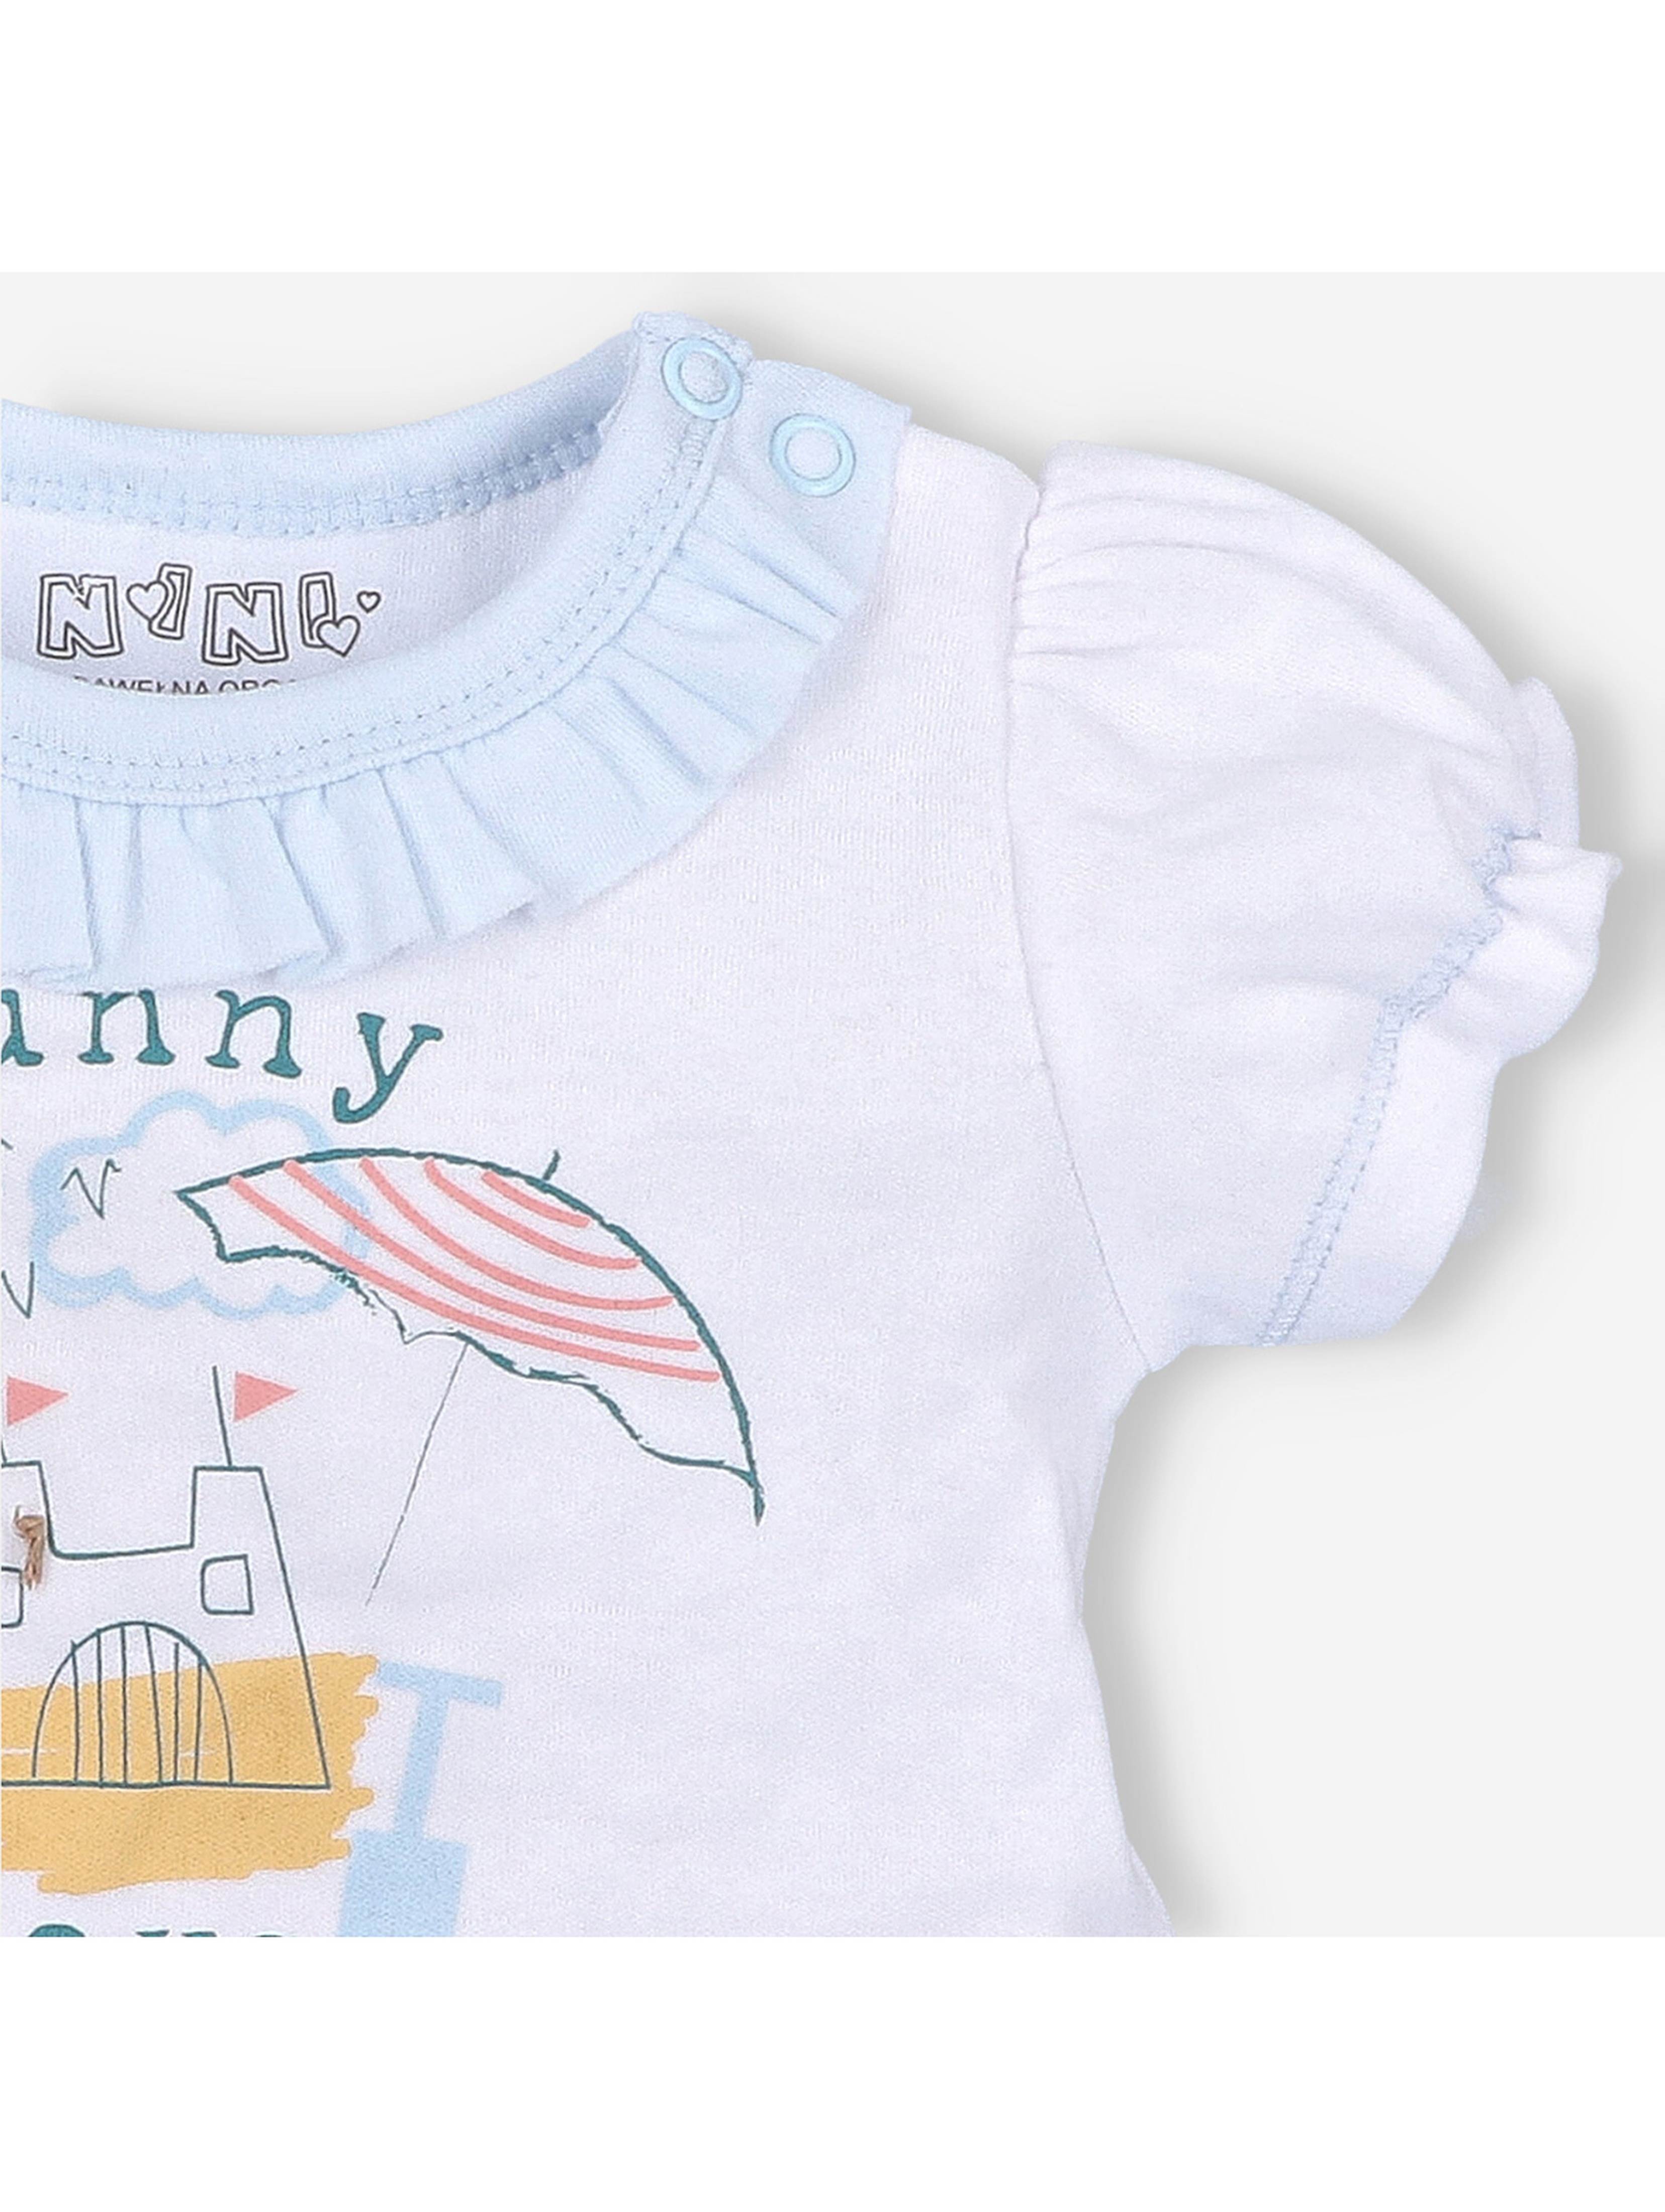 T-shirt niemowlęcy z bawełny organicznej dla dziewczynki